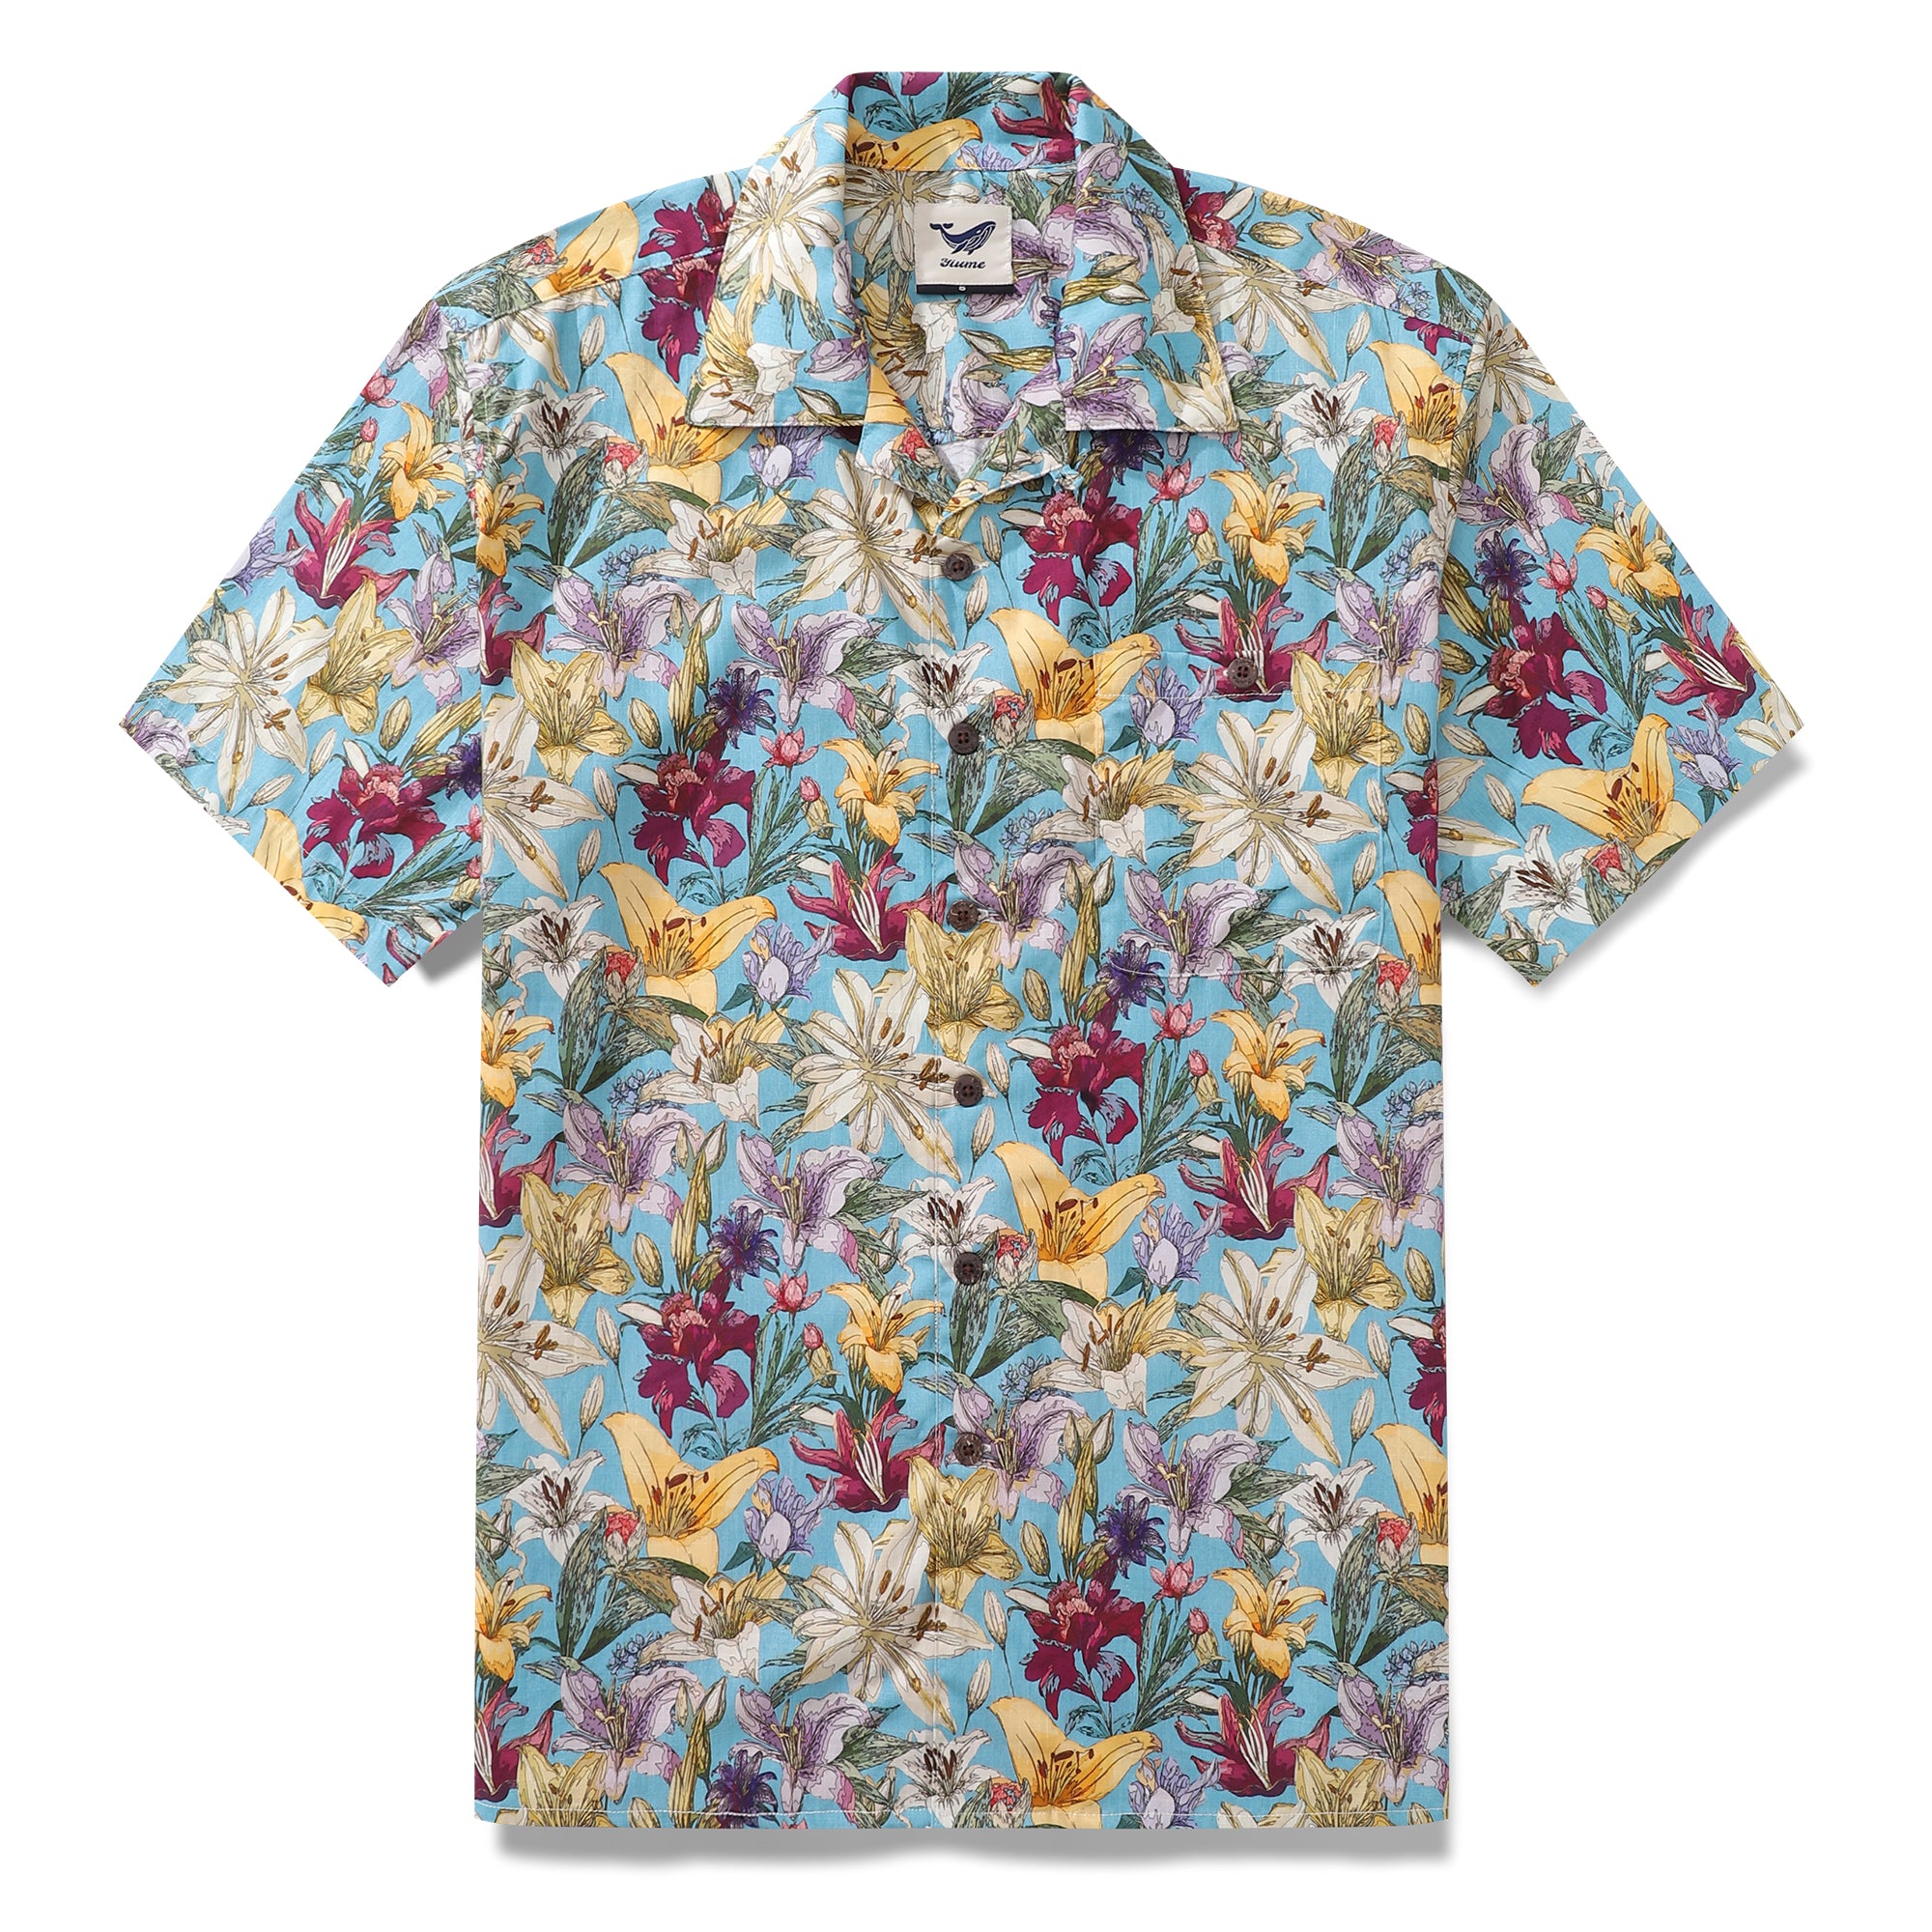 Hawaiian Shirt For Men Retro Blooms Print Shirt Camp Collar 100% Cotton